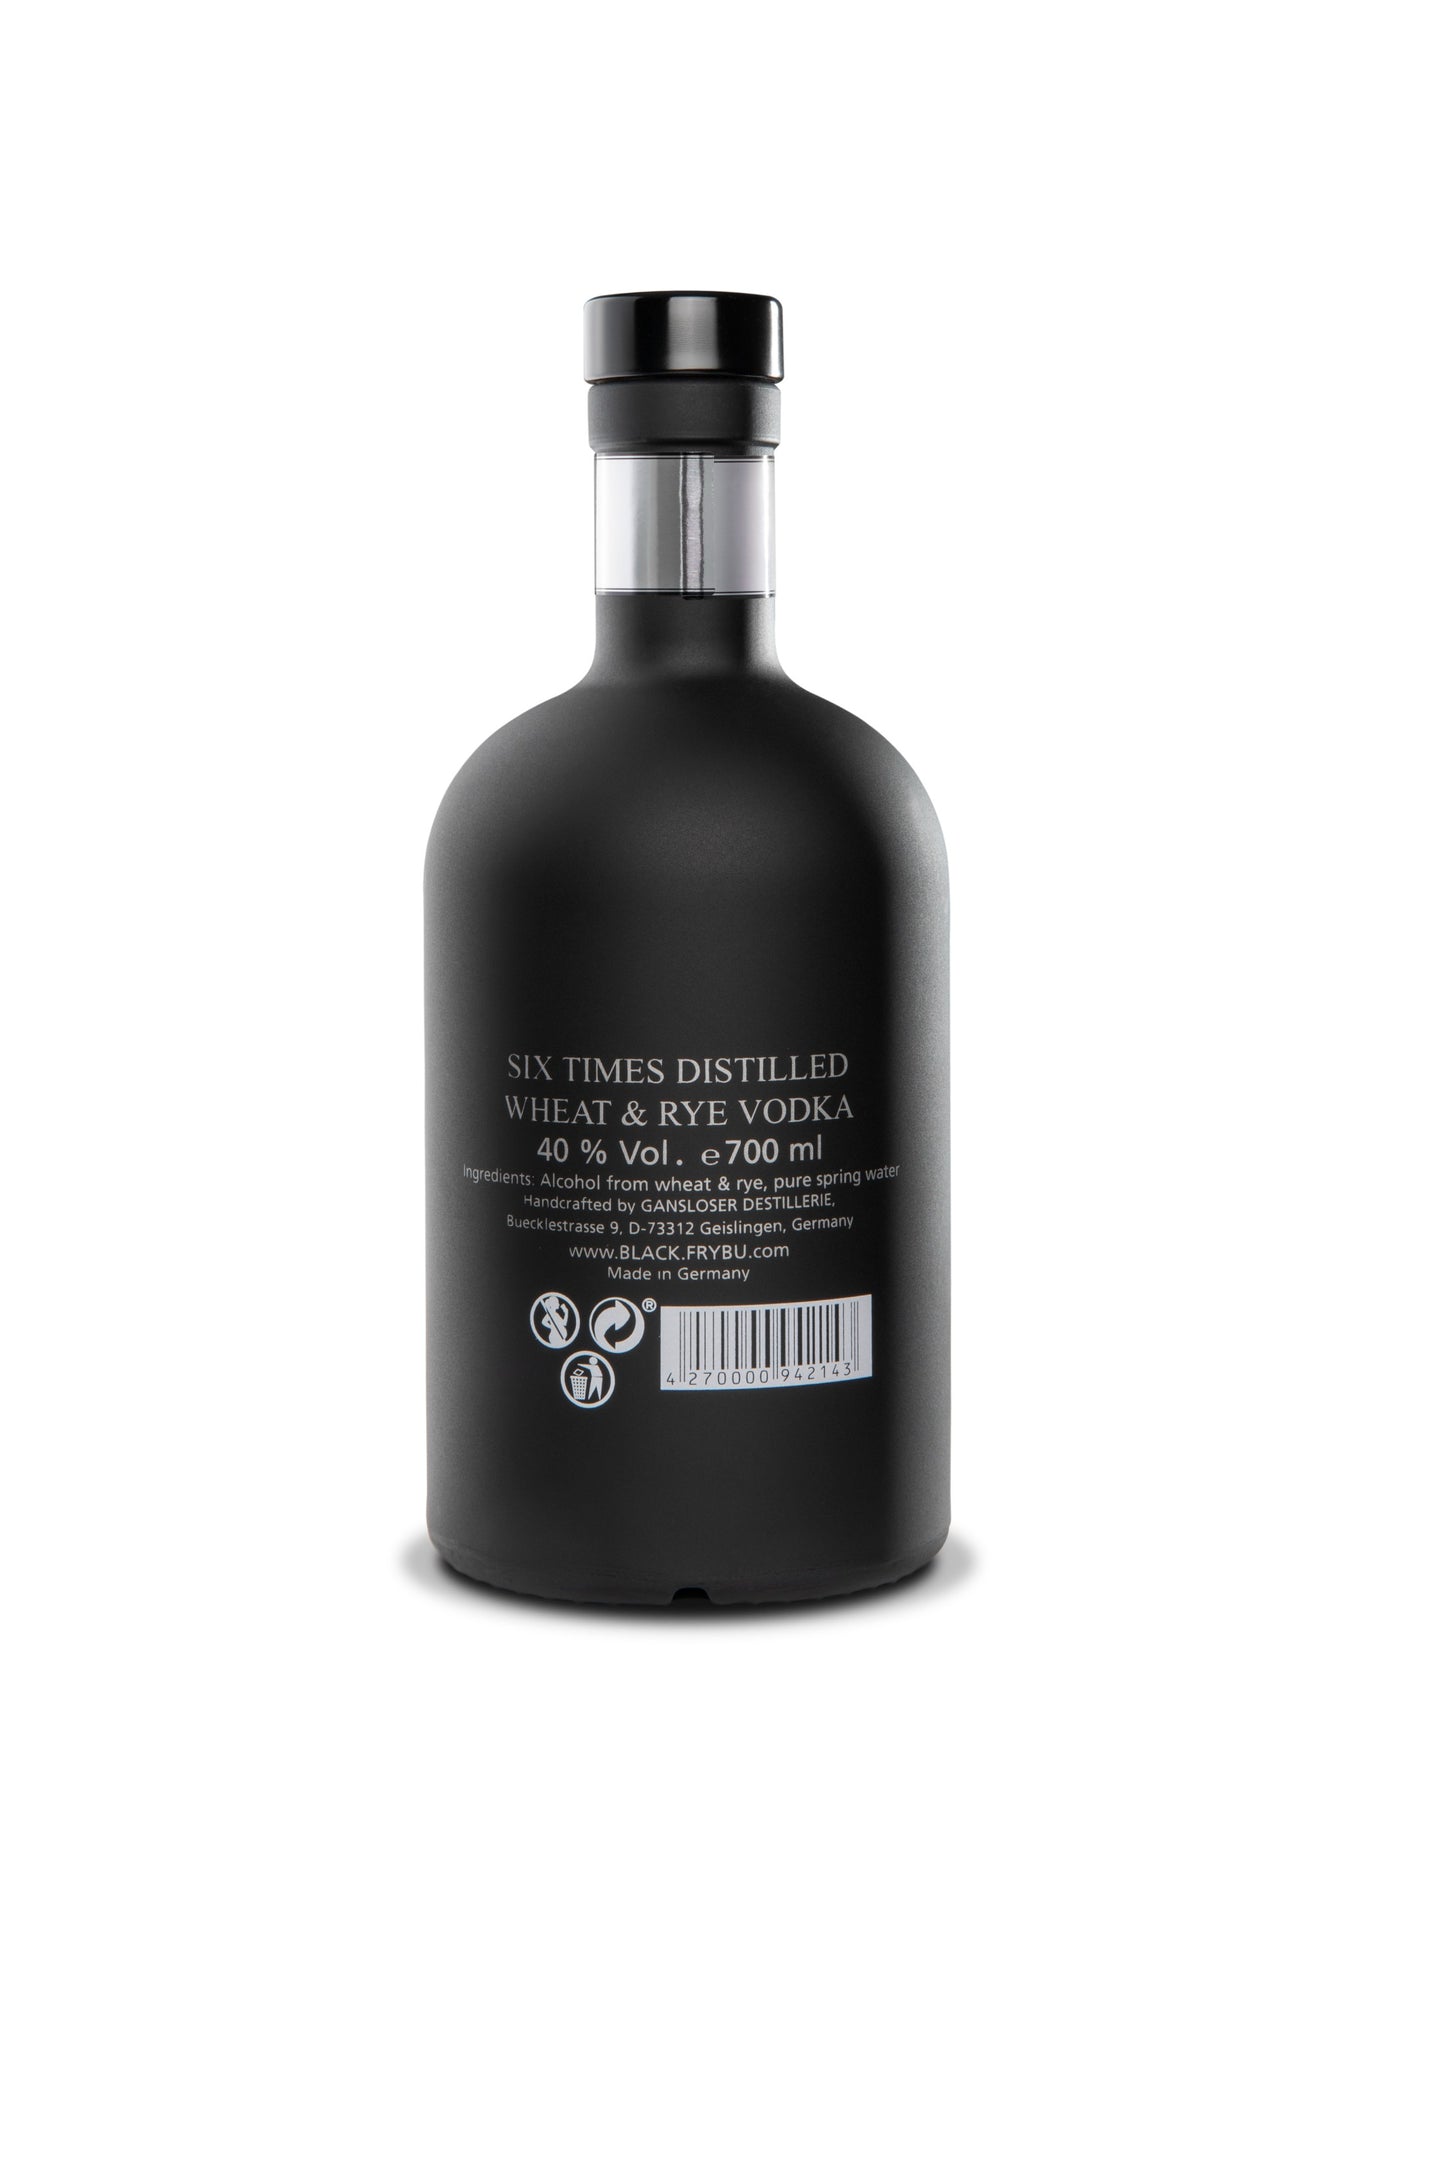 Gansloser Black Vodka 700ml 40% ABV